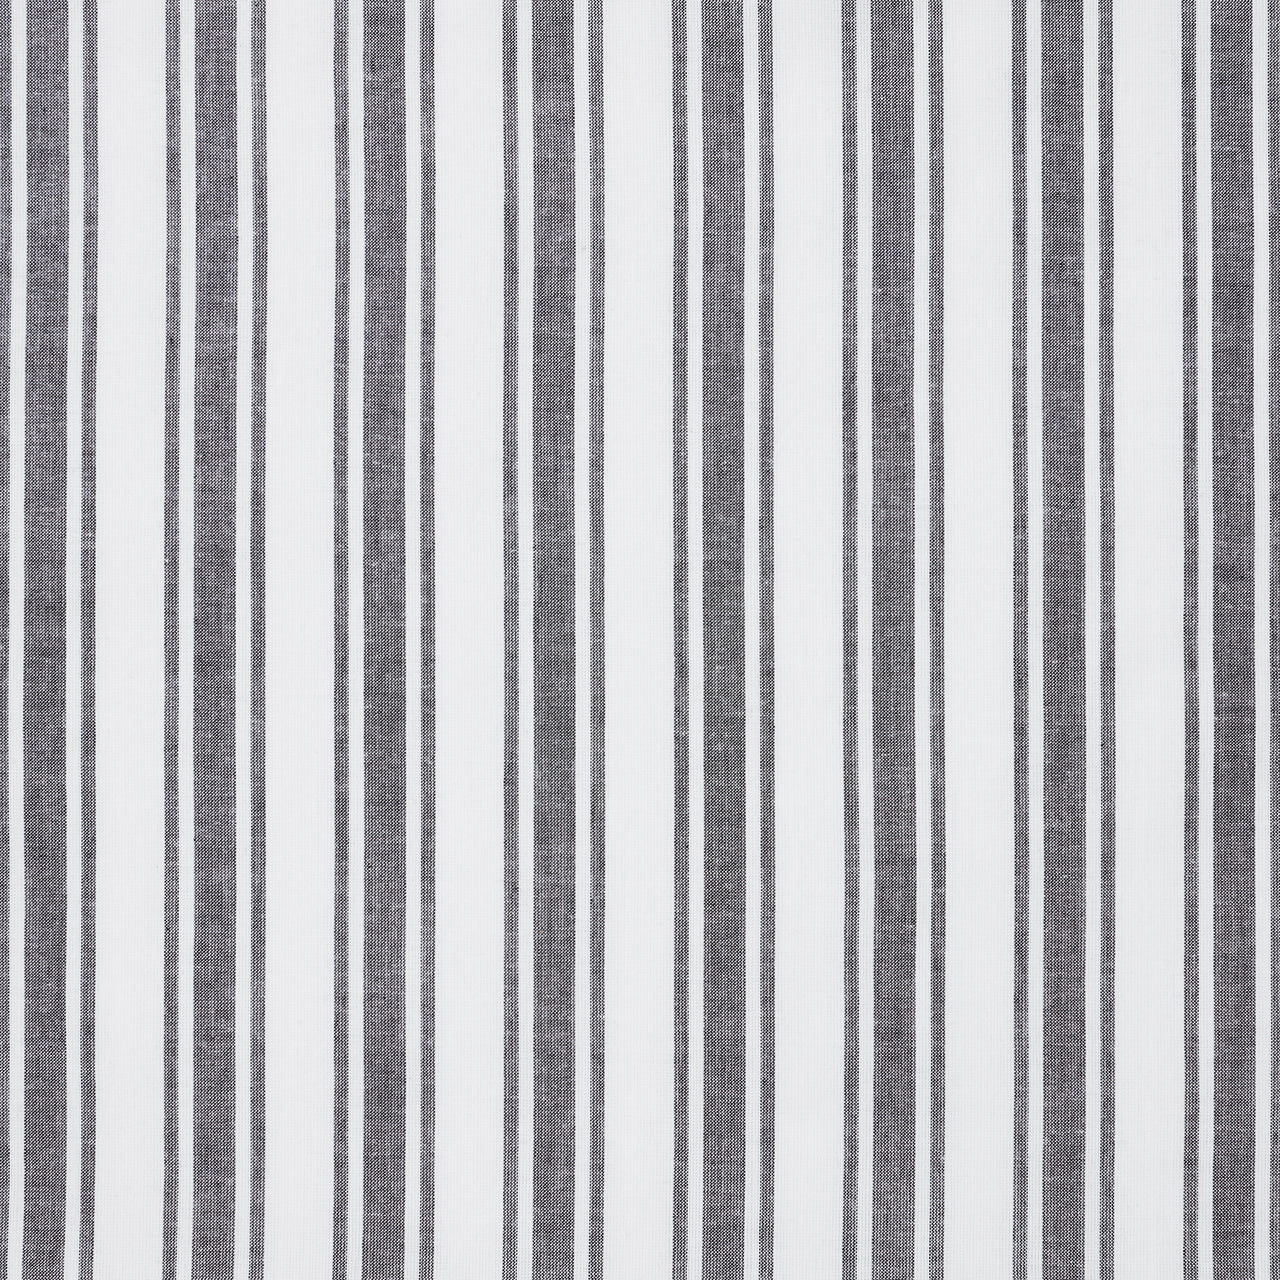 Sawyer Mill Black Ticking Stripe Prairie Short Panel Set of 2 63x36x18 VHC Brands